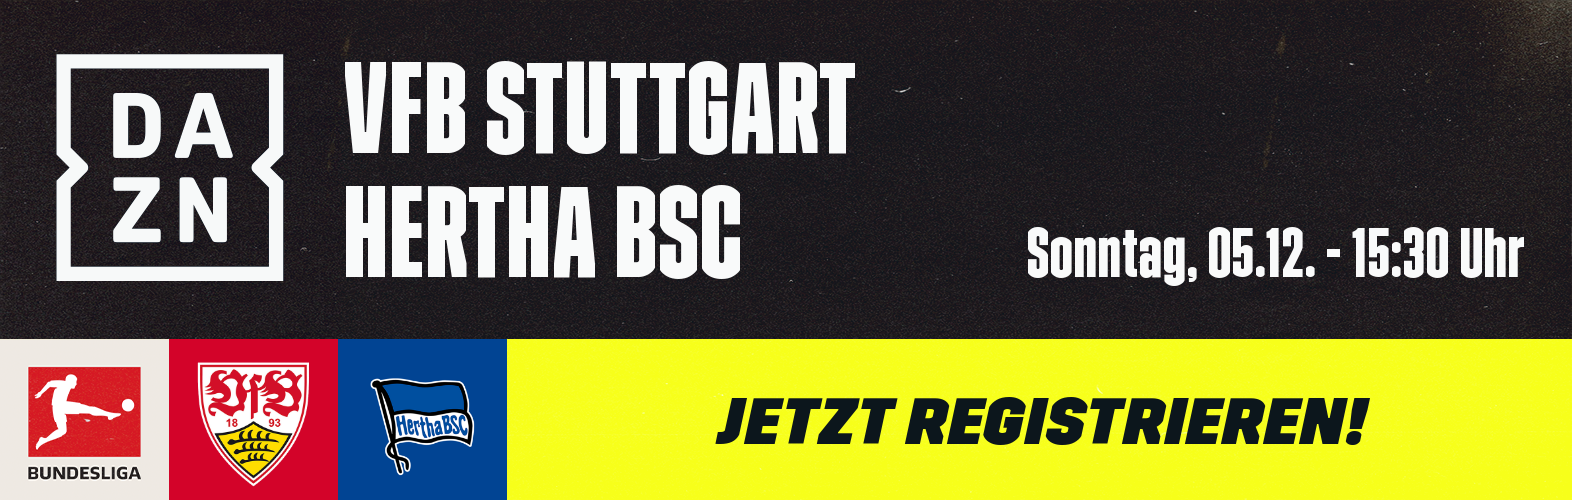 VfB Stuttgart Hertha BSC Bundesliga Banner 05122021